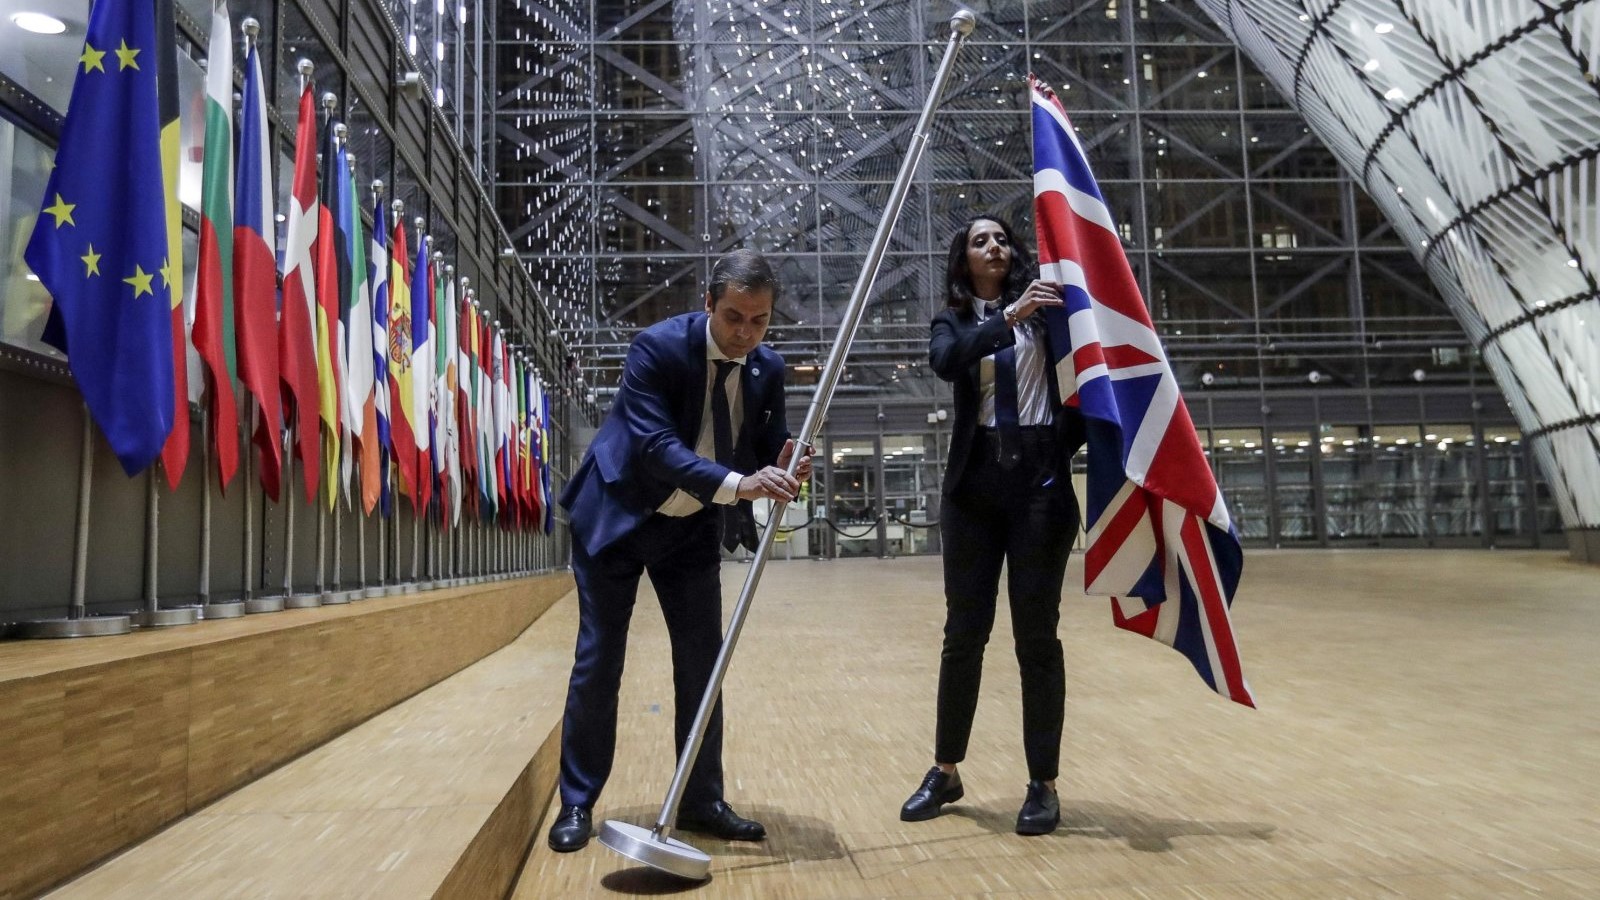 موظفان في مجلس الاتحاد الأوروبي ينزعان علم المملكة المتحدة من مبنى المجلس الأوروبي في بروكسل في 31 يناير 2020